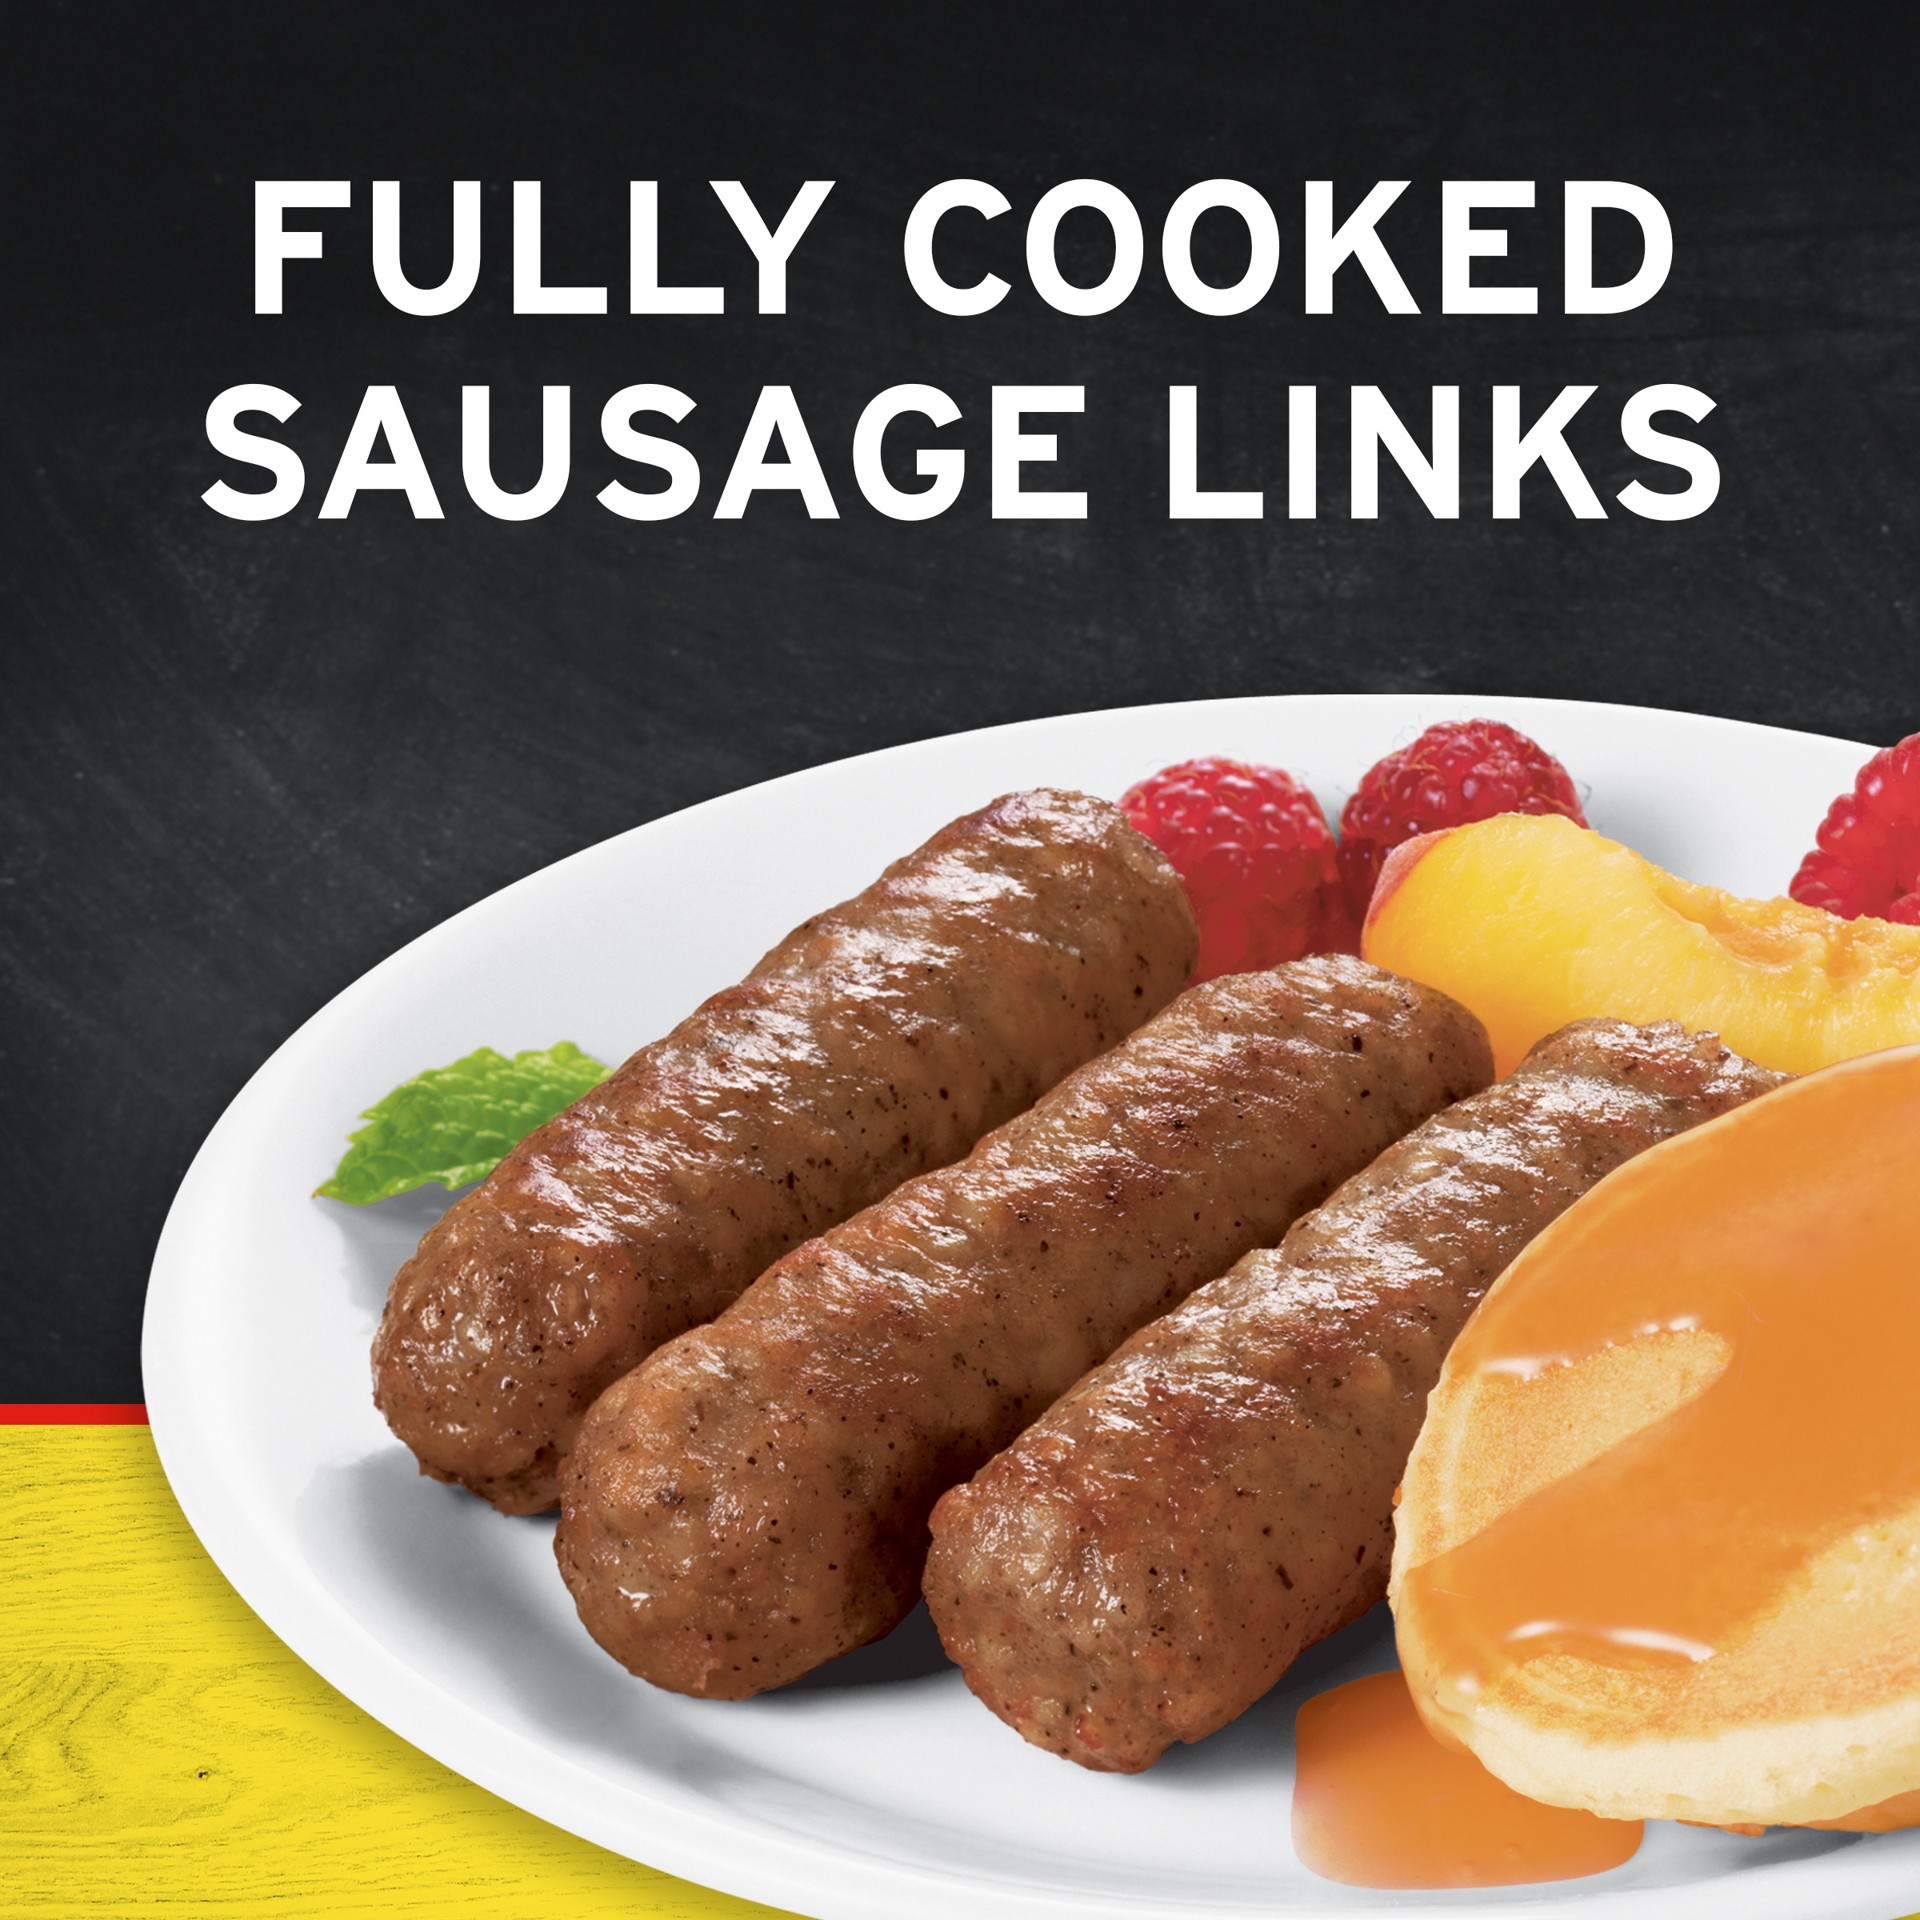 slide 5 of 5, Banquet Brown 'N Serve Original Sausage Links 2 lb, 2 lb